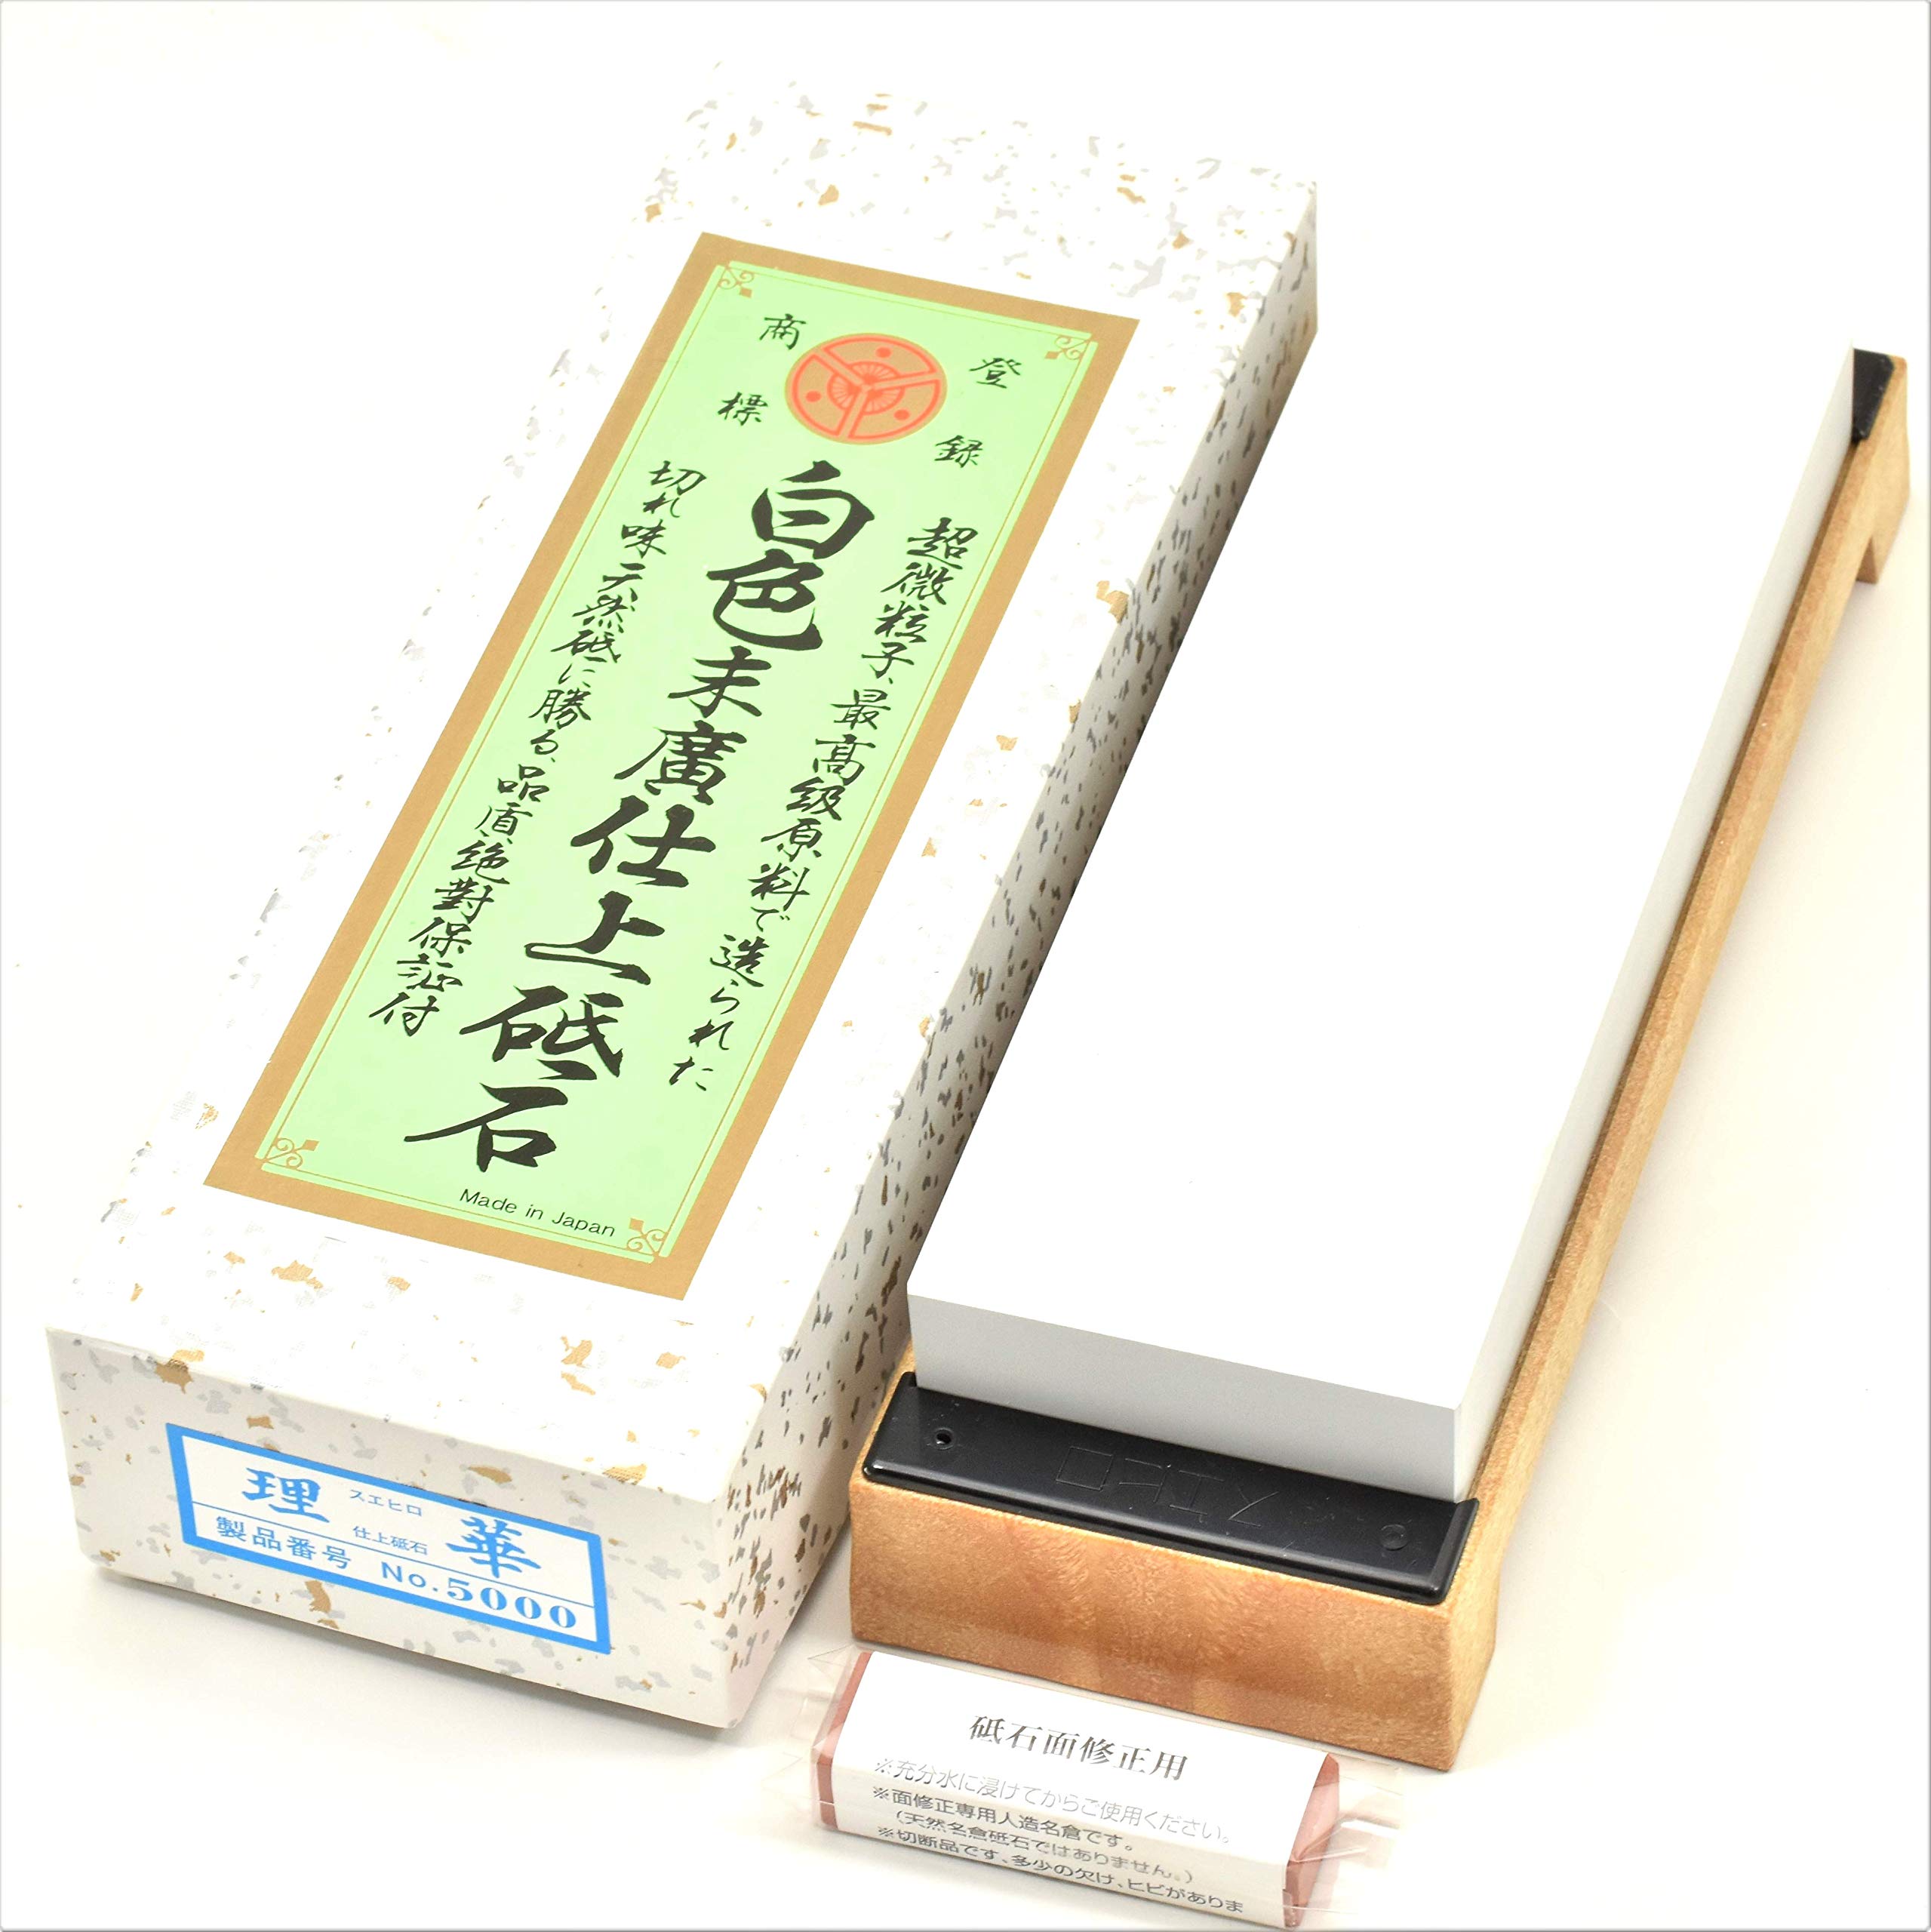 Wetzstein Japanisch Abziehstein Schleifstein Körnung 5000 Küchenmesser Schärfer Schärfung für Messer - Hergestellt in Japan